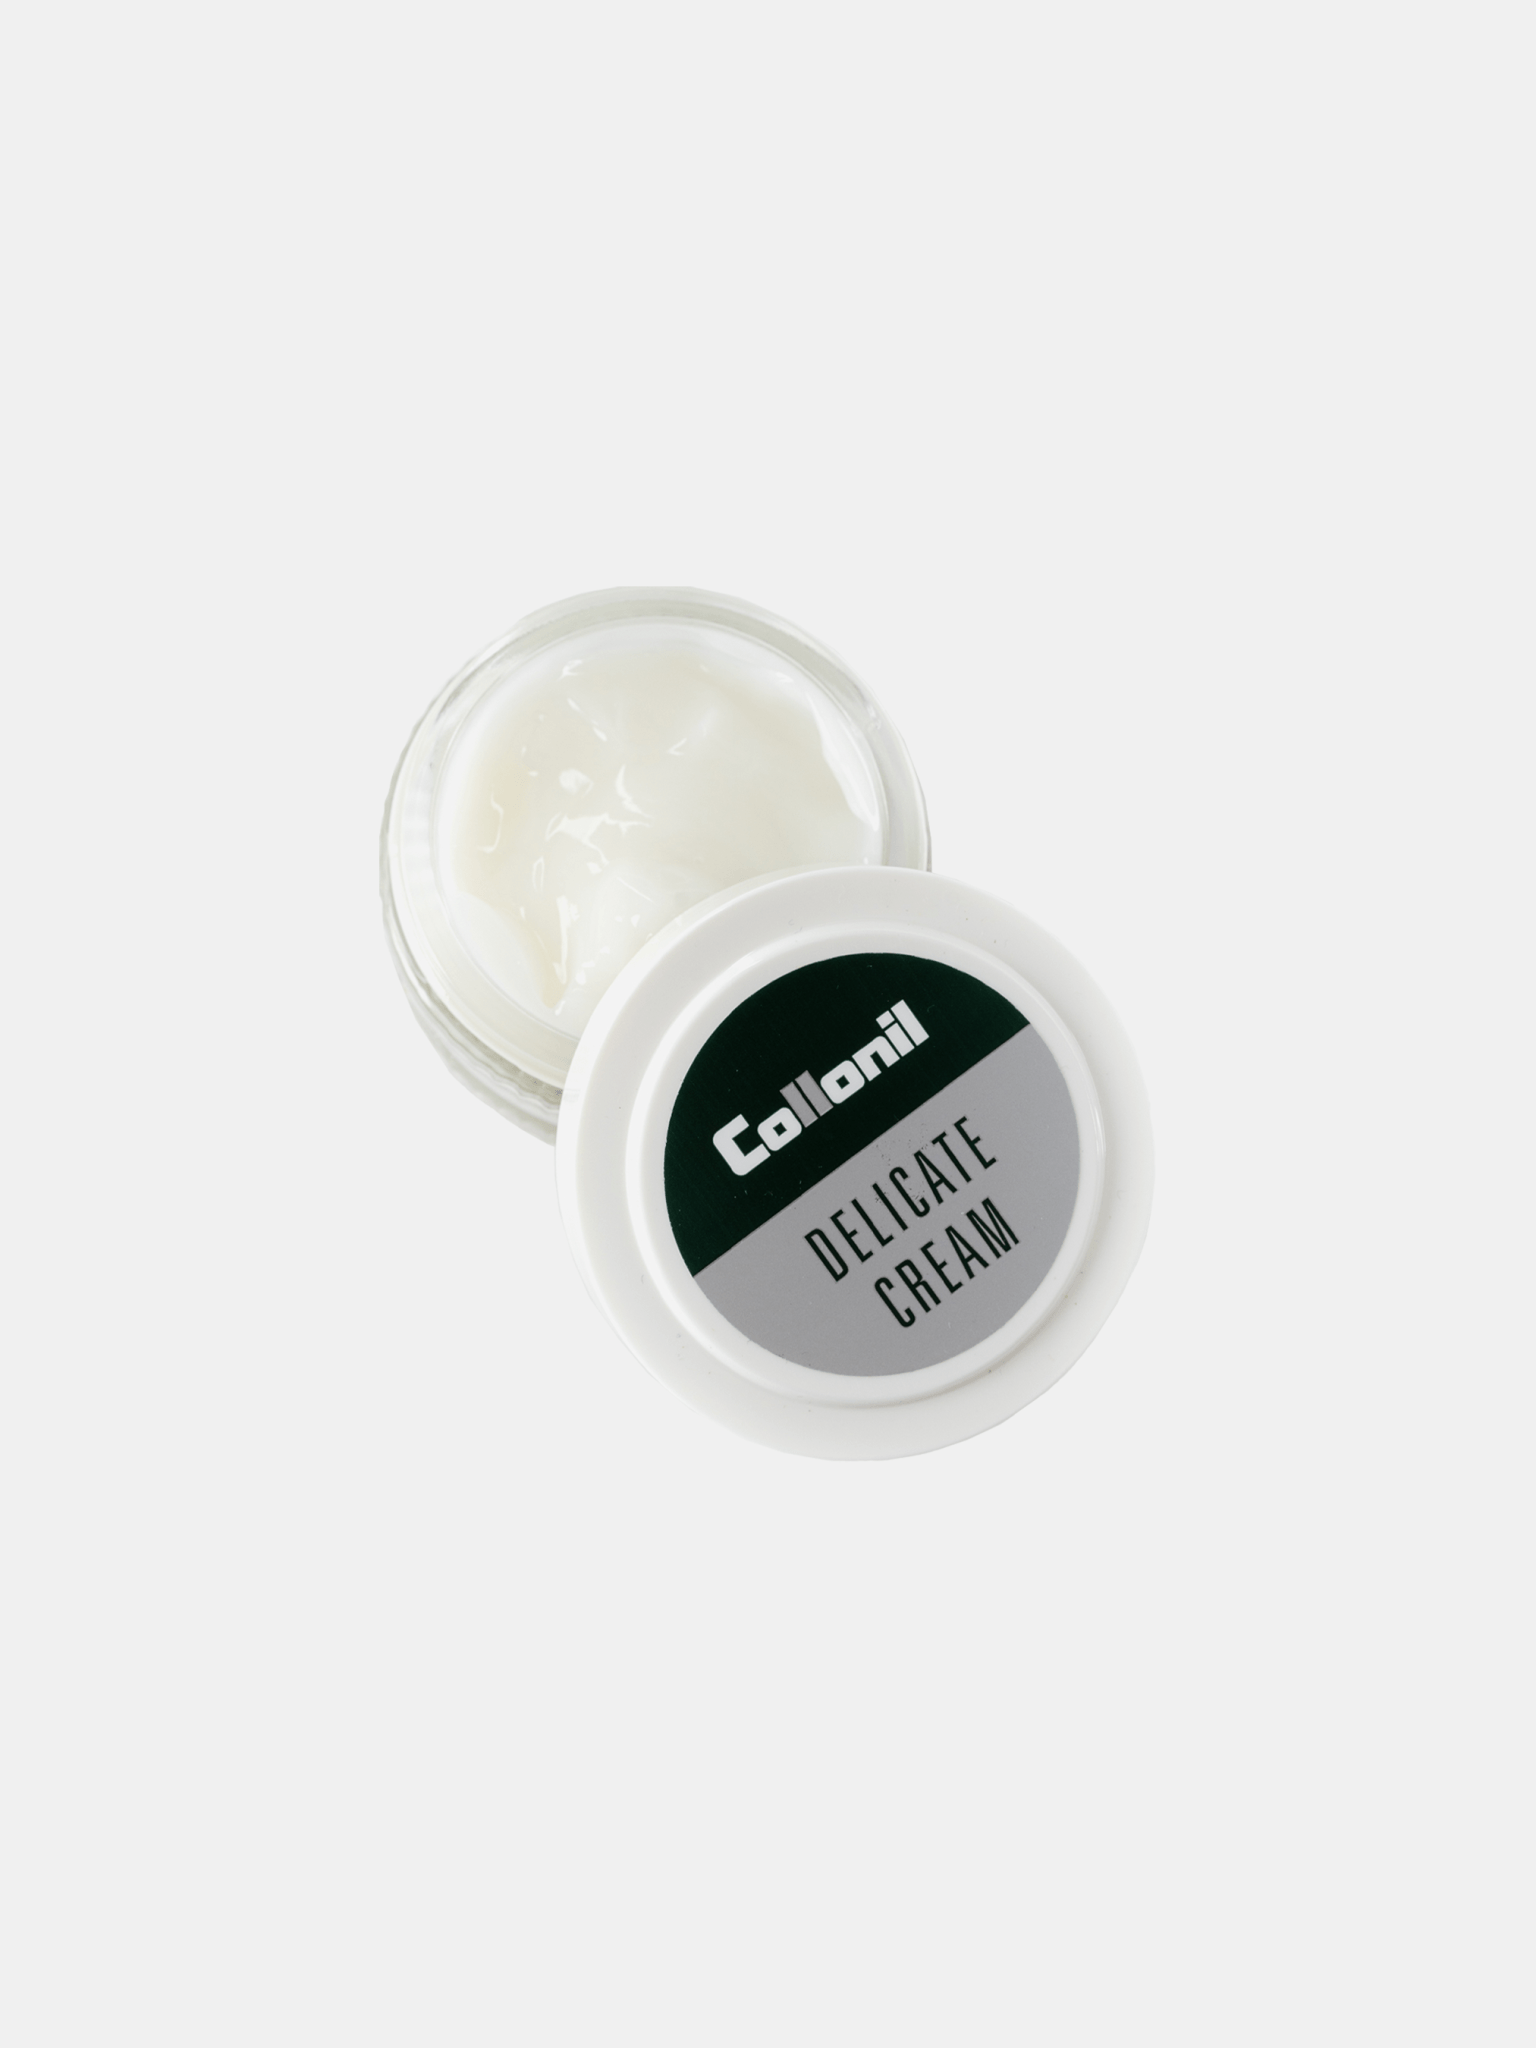 The Collonil Delicate Cream - 50ml - The Cambridge Satchel Company US Store